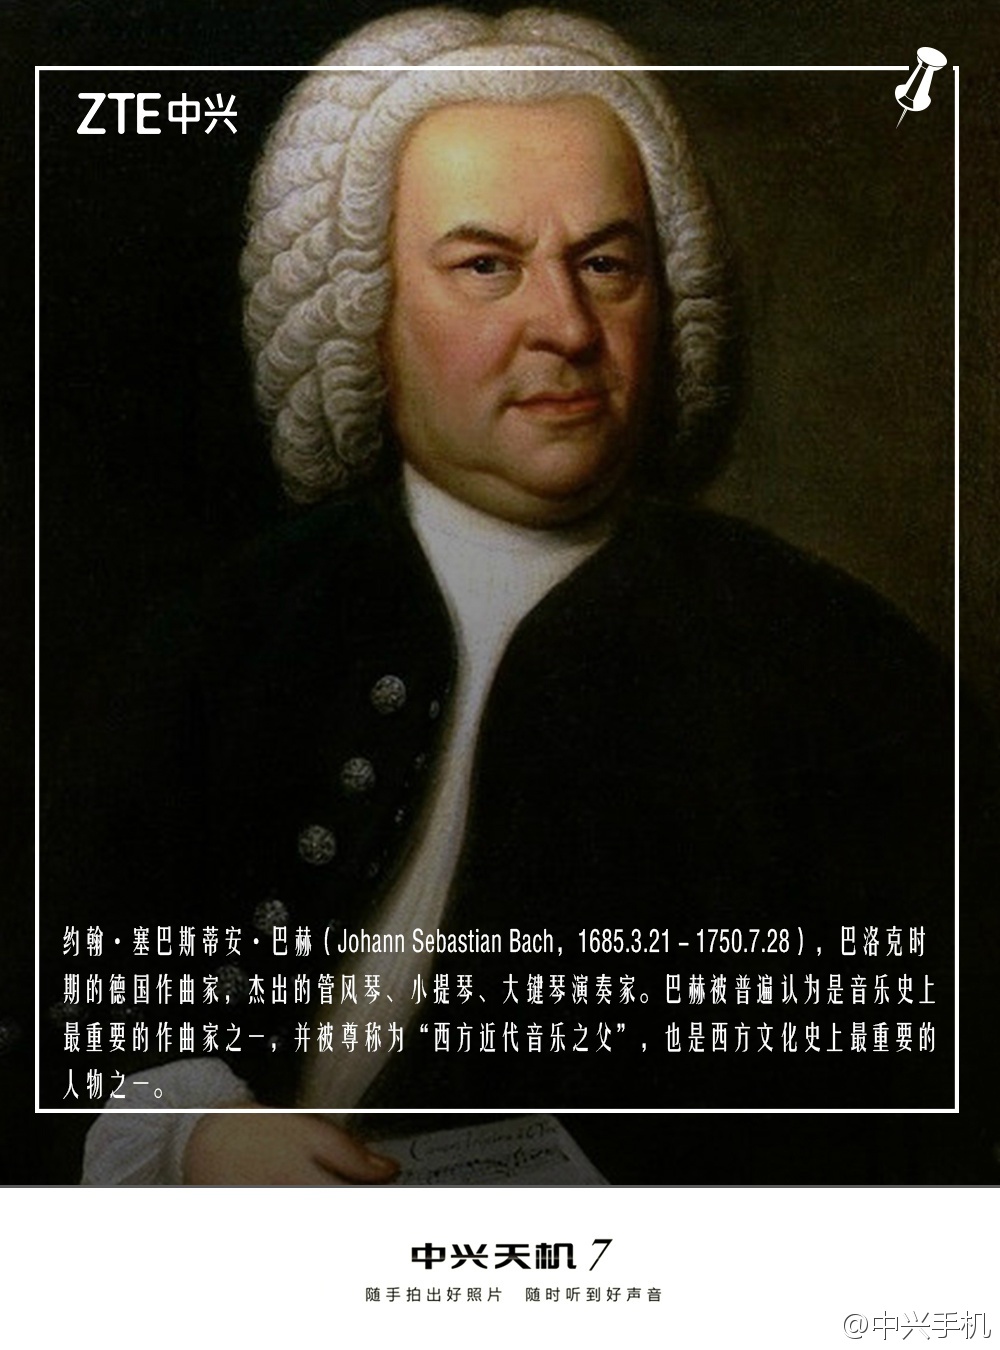 巴赫是德国作曲家,有"西方近代音乐之父"之称